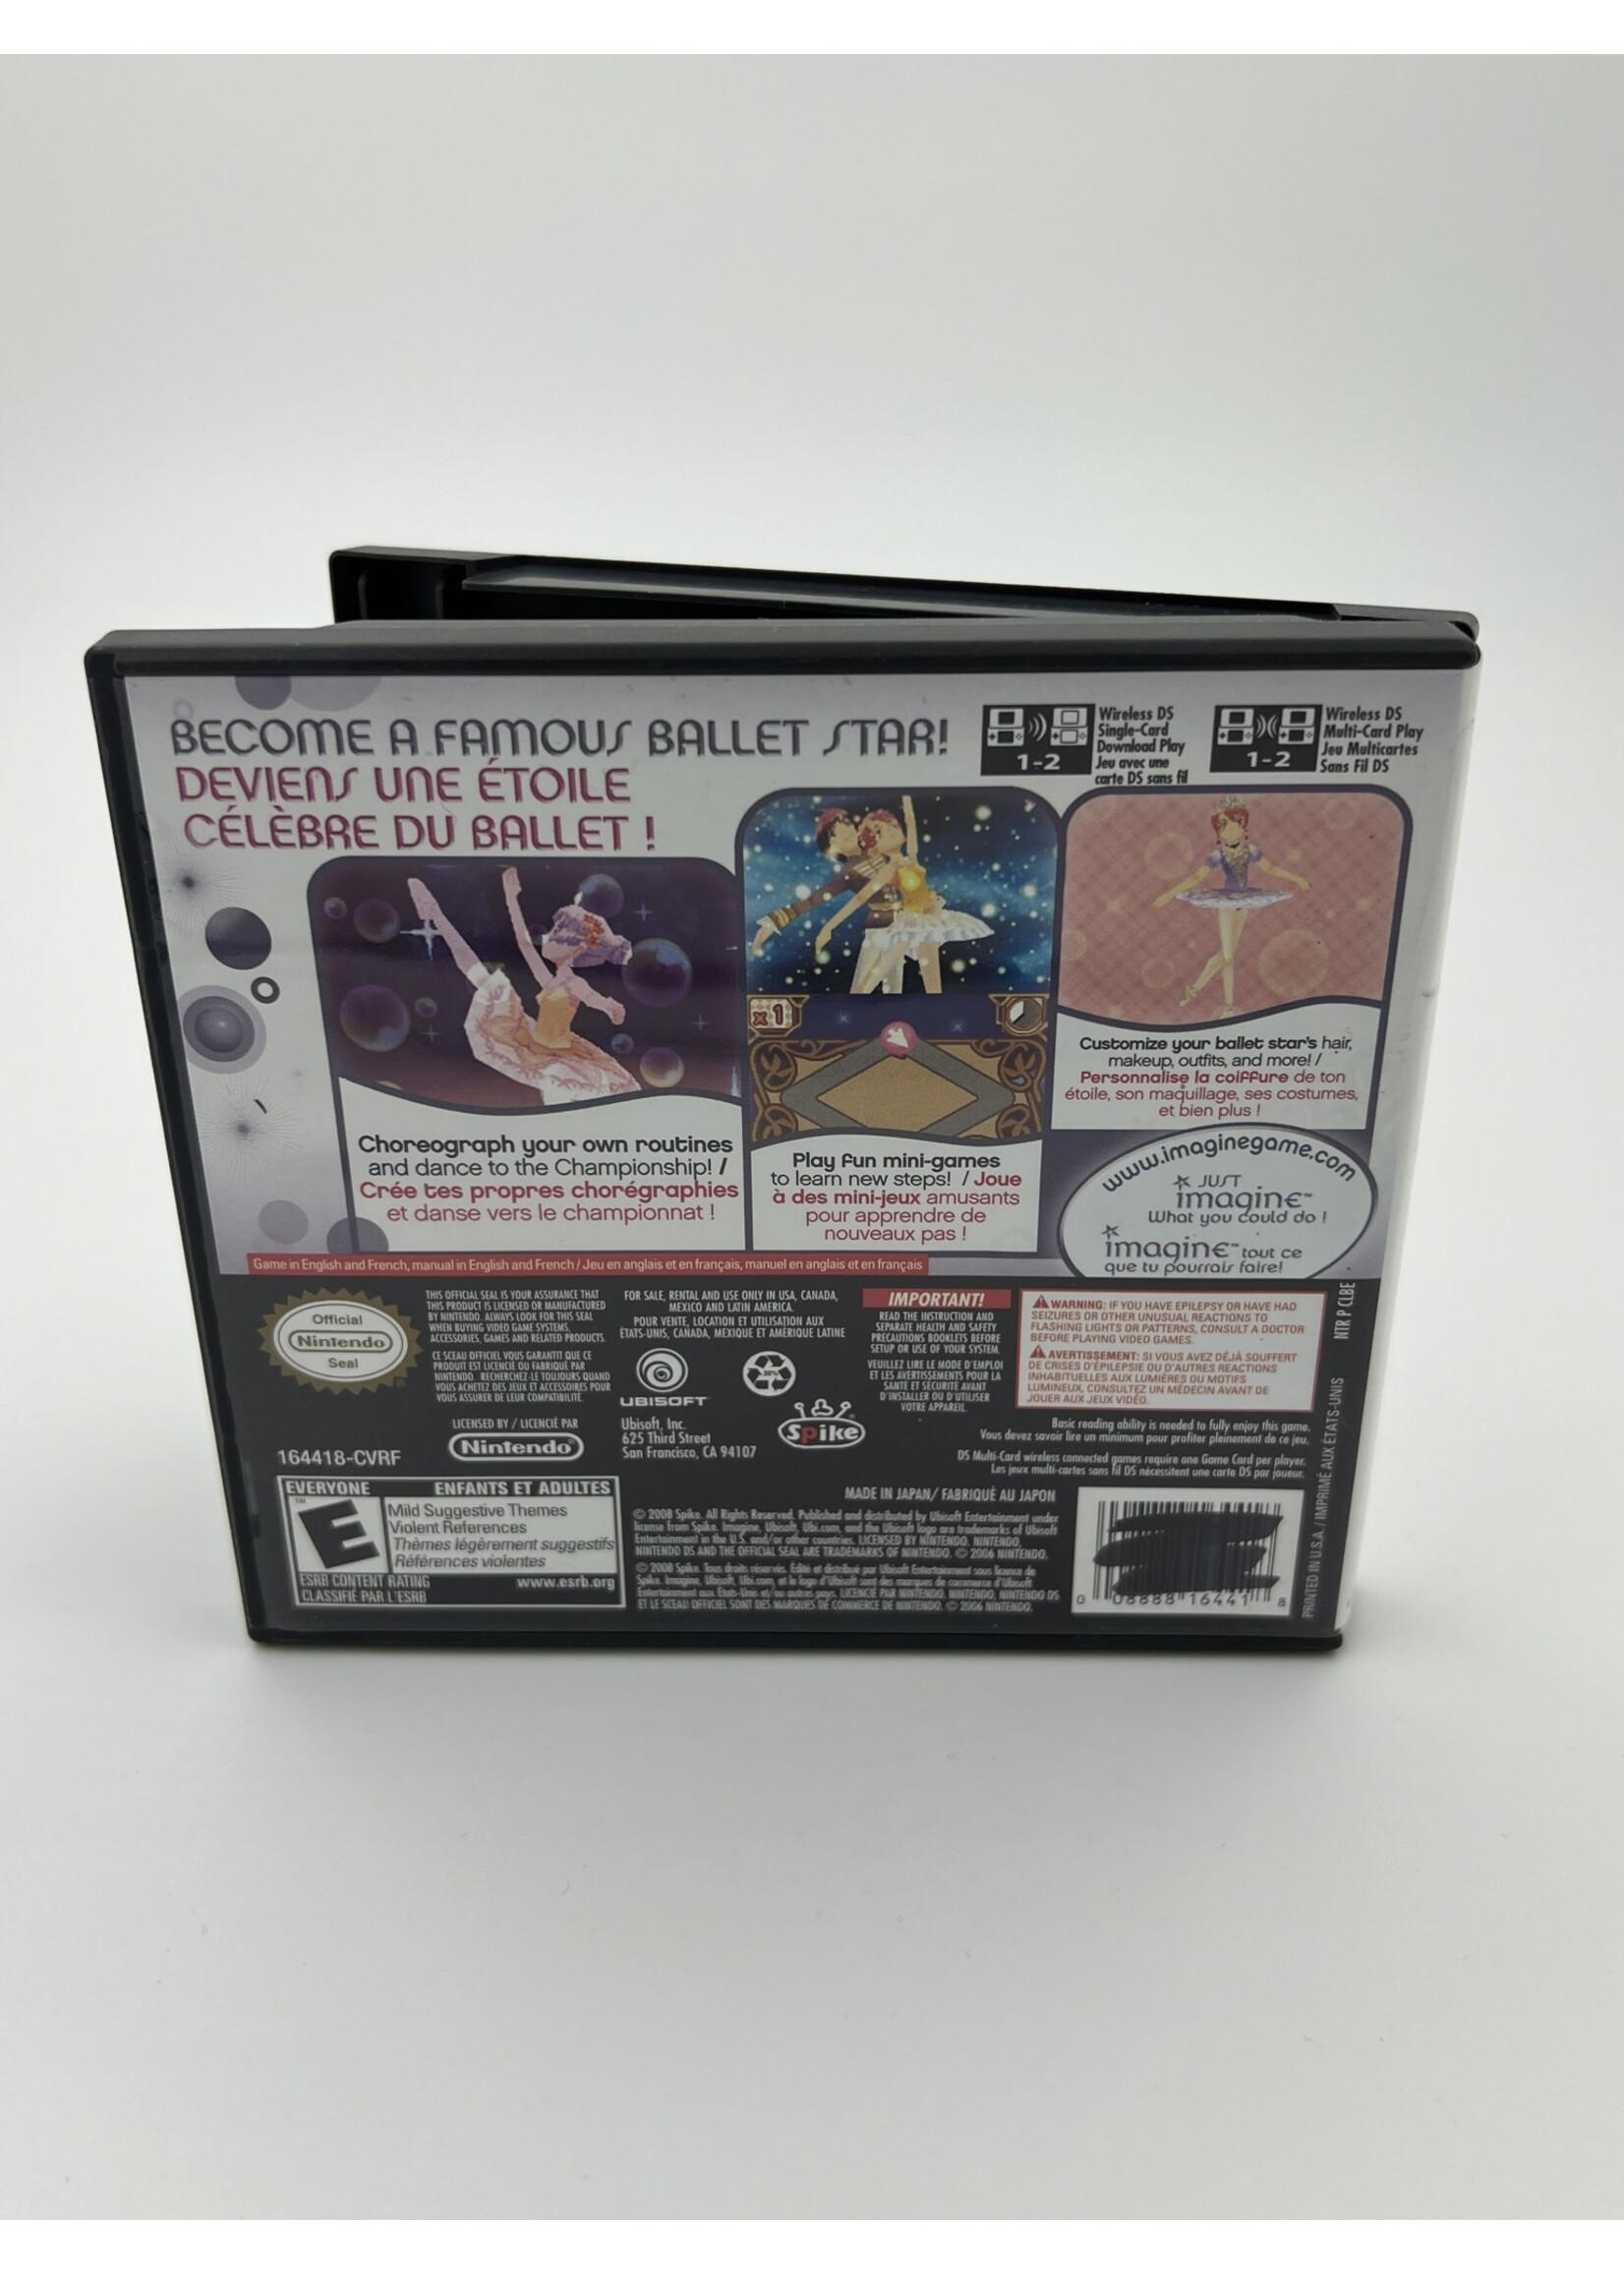 Nintendo   Imagine Ballet Star DS